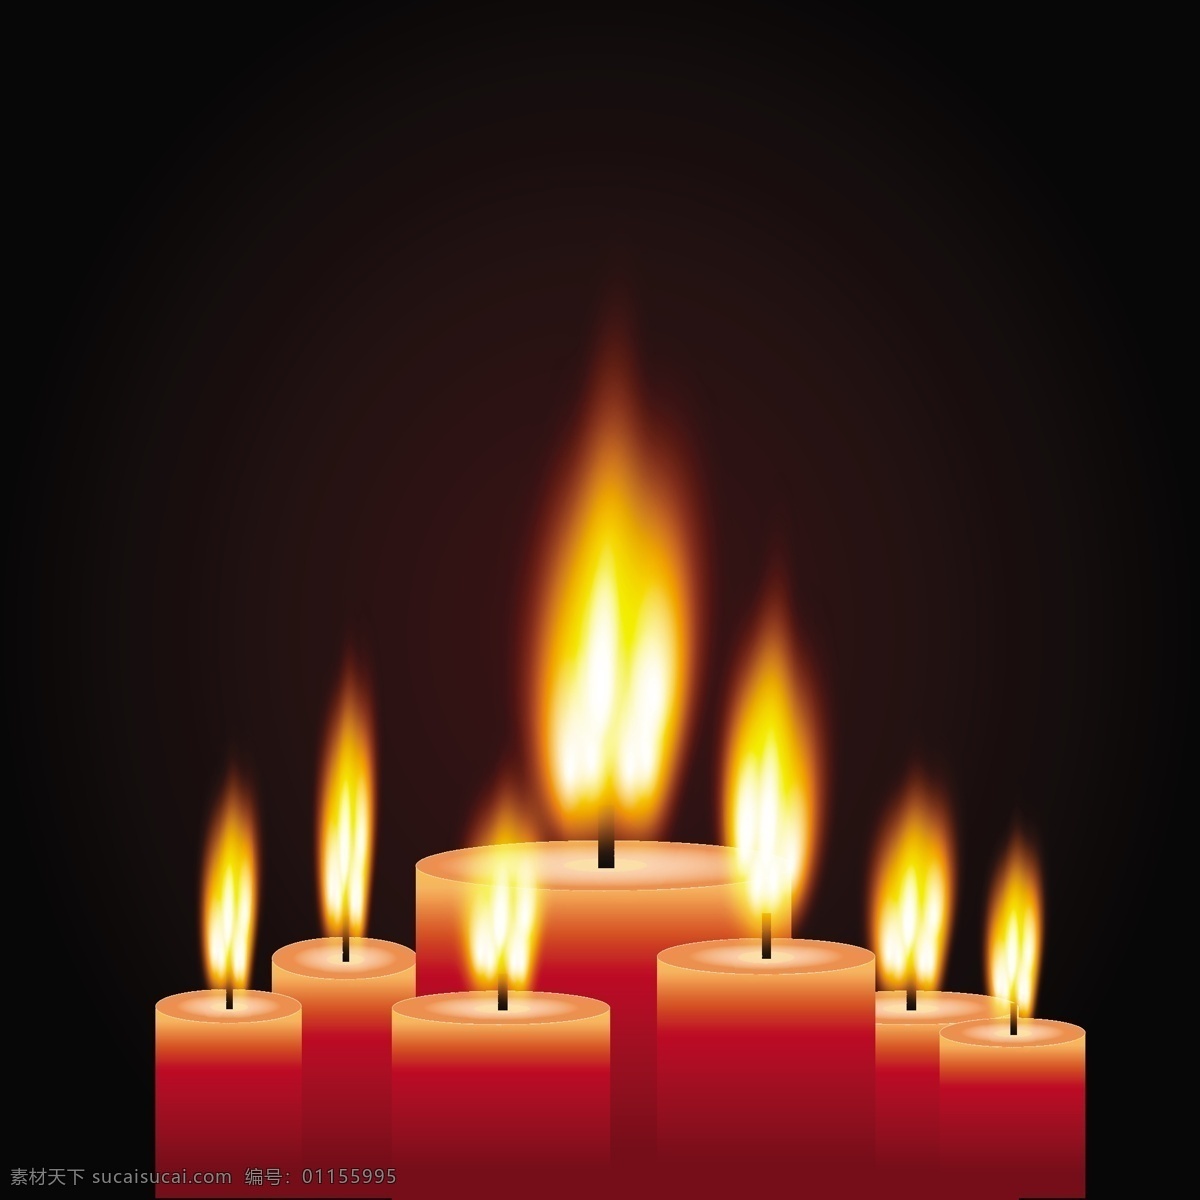 燃烧的蜡烛 蜡烛 烛光 烛火 火焰 火苗 矢量火焰 燃烧 生活百科 矢量素材 黑色